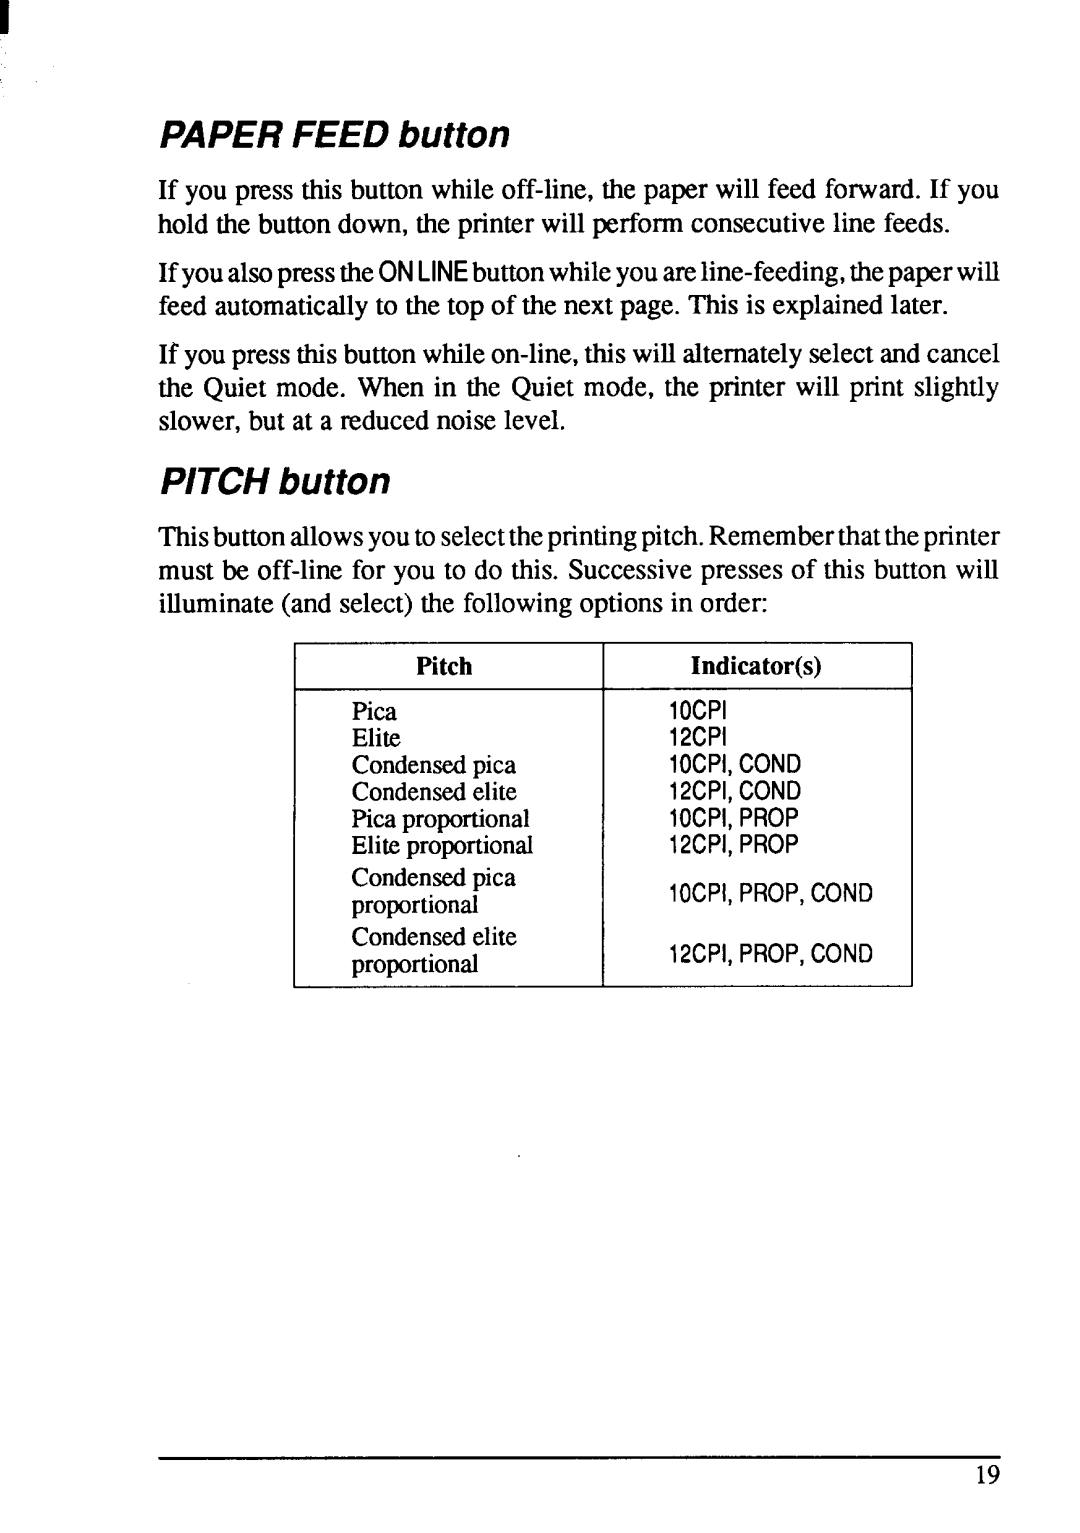 Star Micronics NX-1001 manual PAPERFEED button, PITCHbutton, Pitch, Indicators 